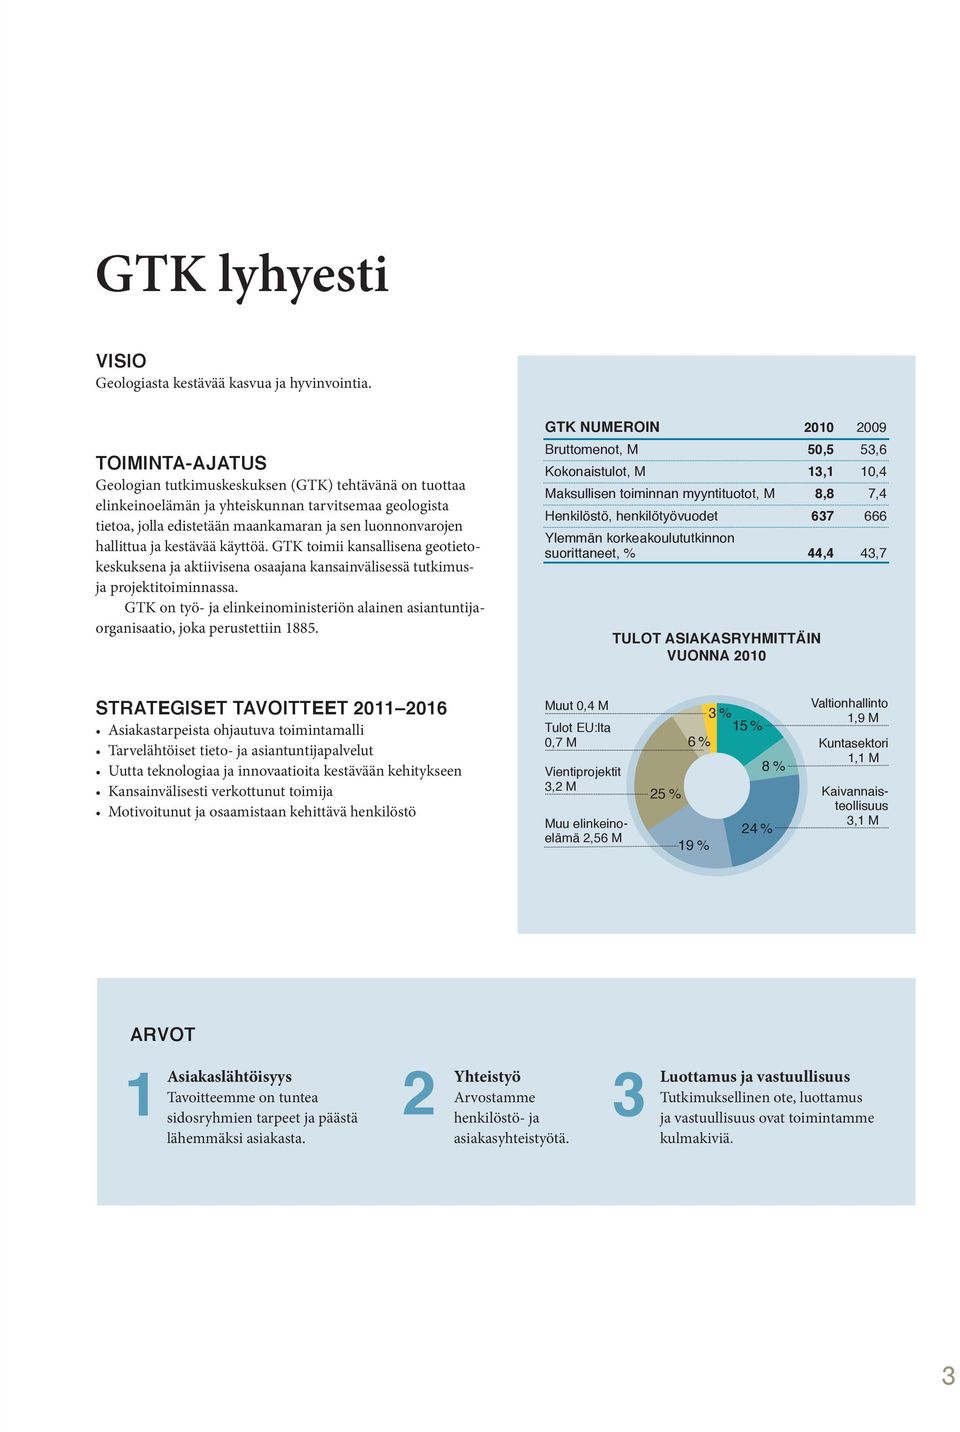 kestävää käyttöä. GTK toimii kansallisena geotietokeskuksena ja aktiivisena osaajana kansainvälisessä tutkimusja projektitoiminnassa.